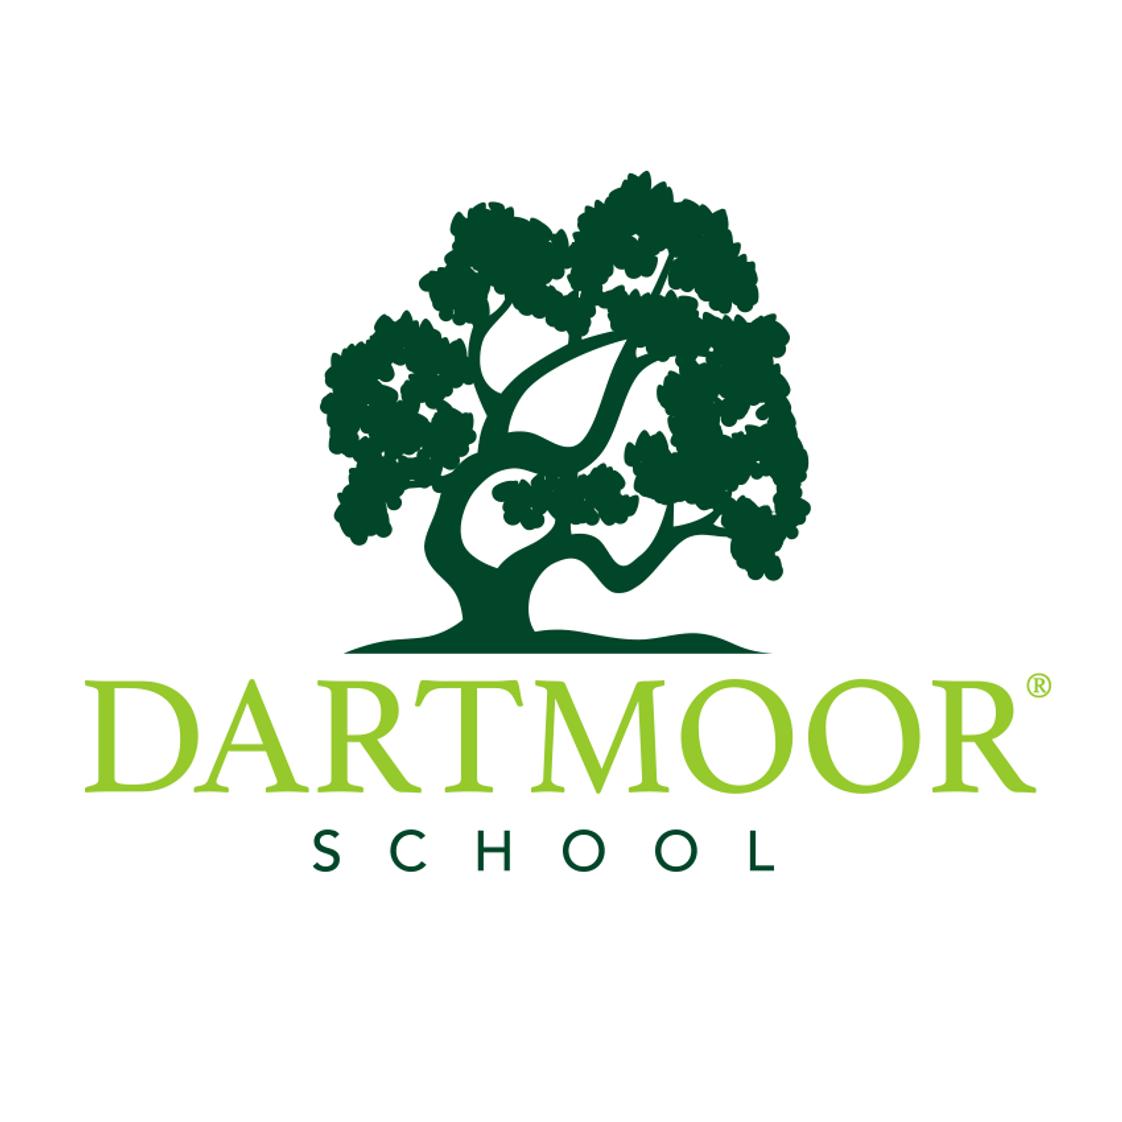 Dartmoor School Photo - Dartmoor School